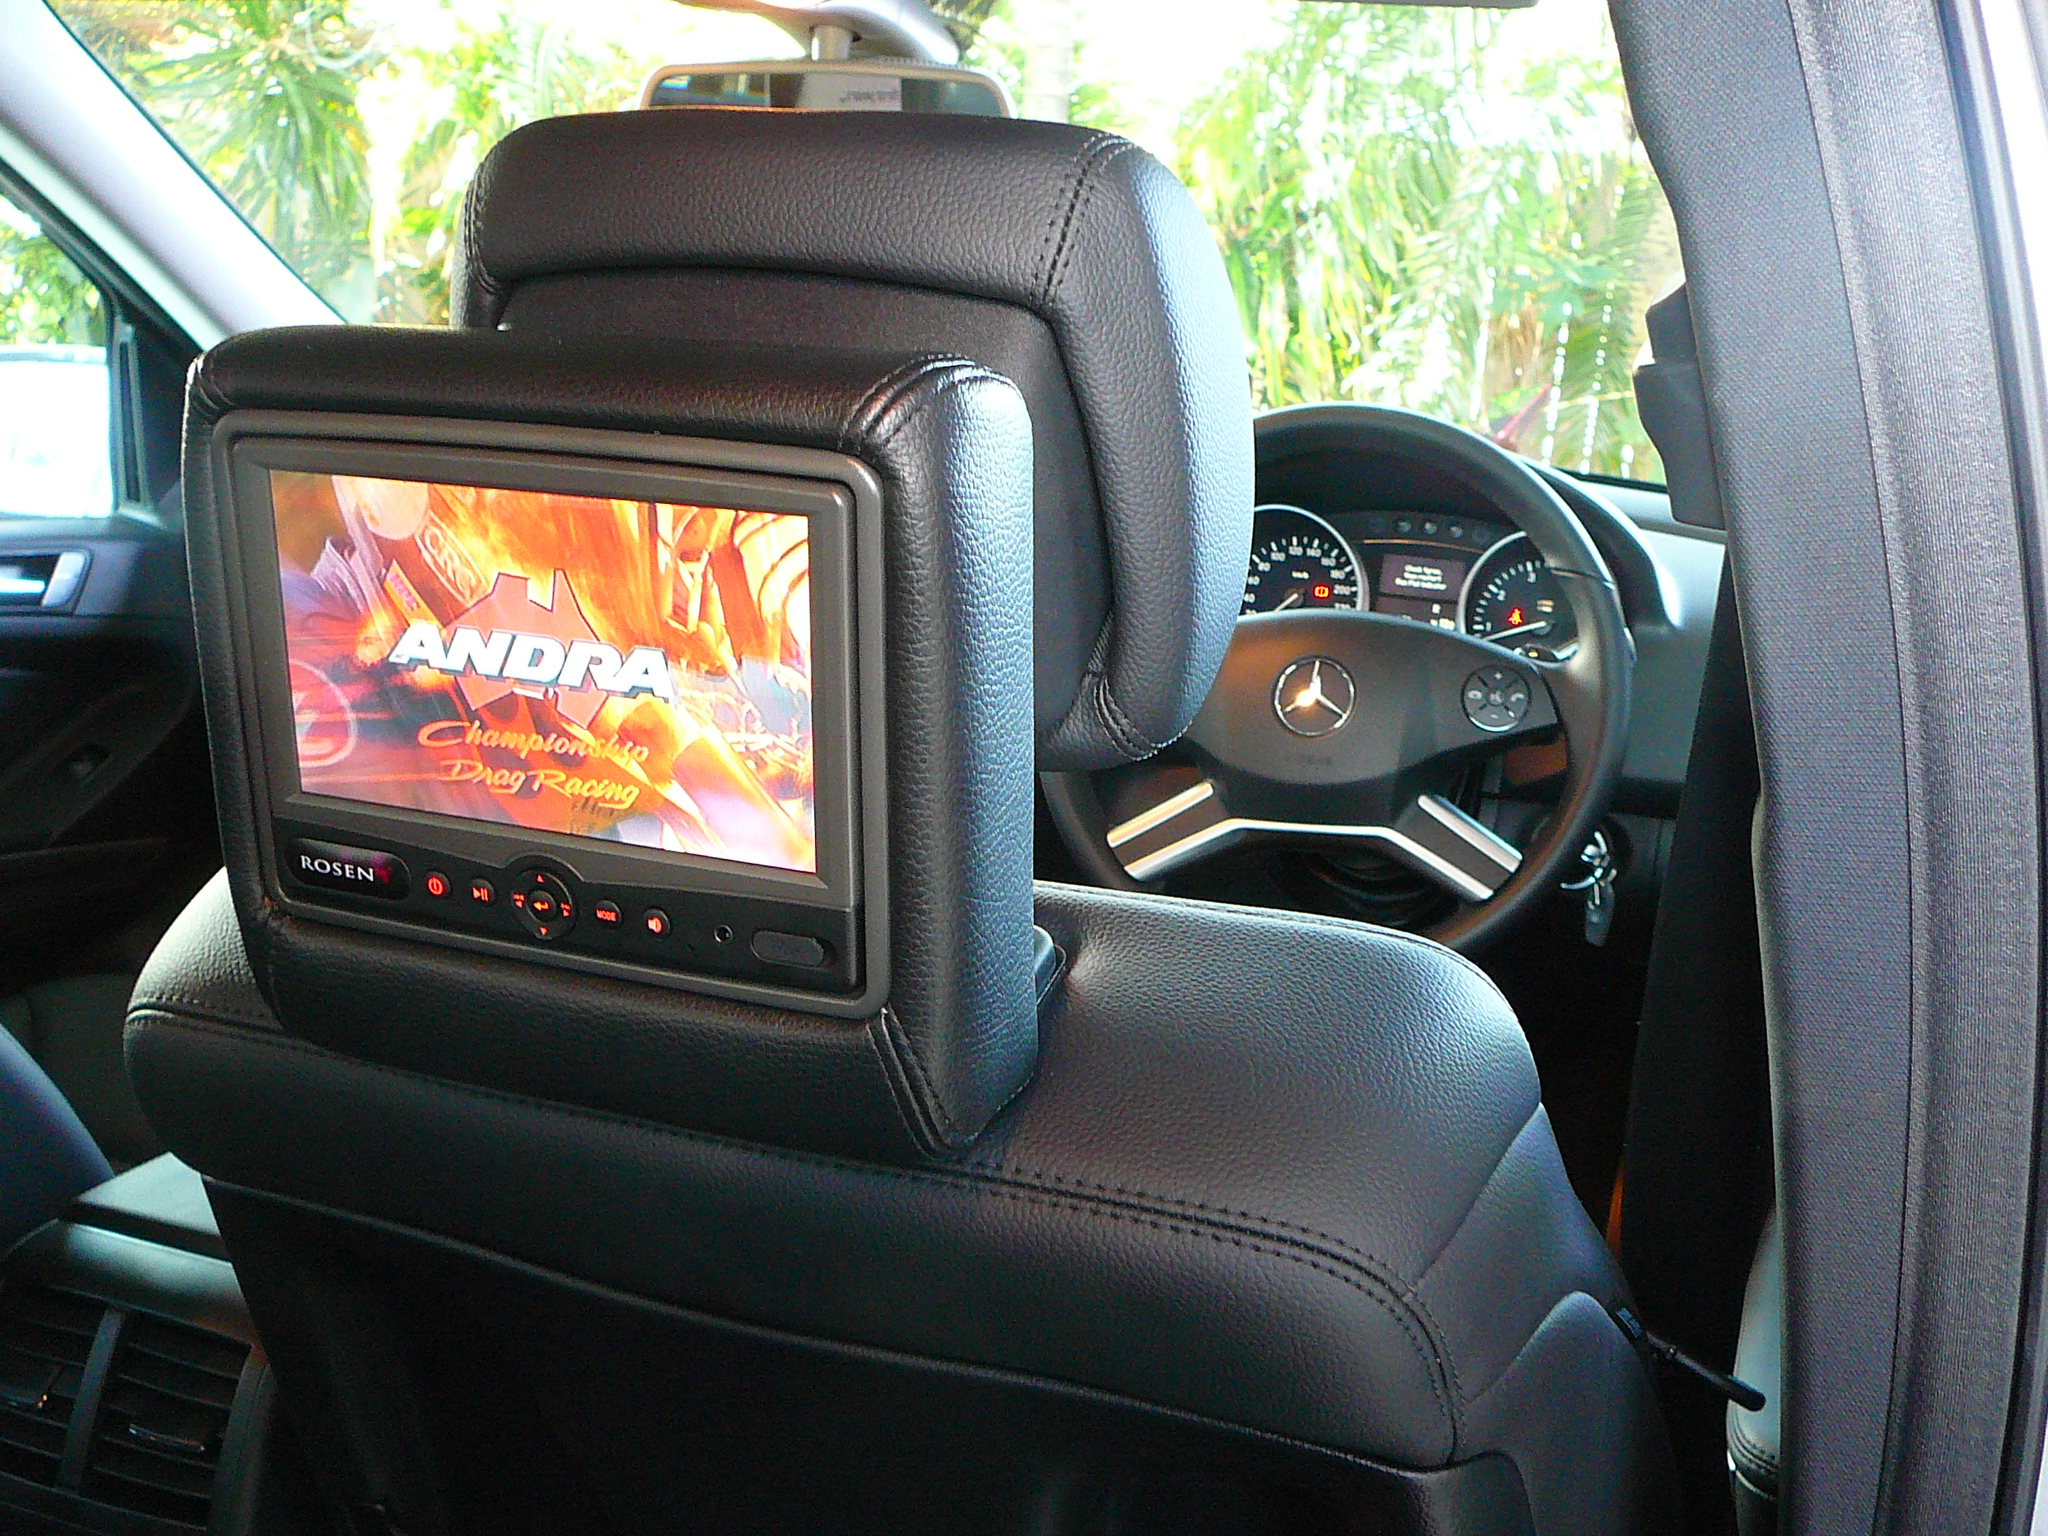 Mercedes ML 320 2010, Rosen AV-7500 Active DVD headrest screens